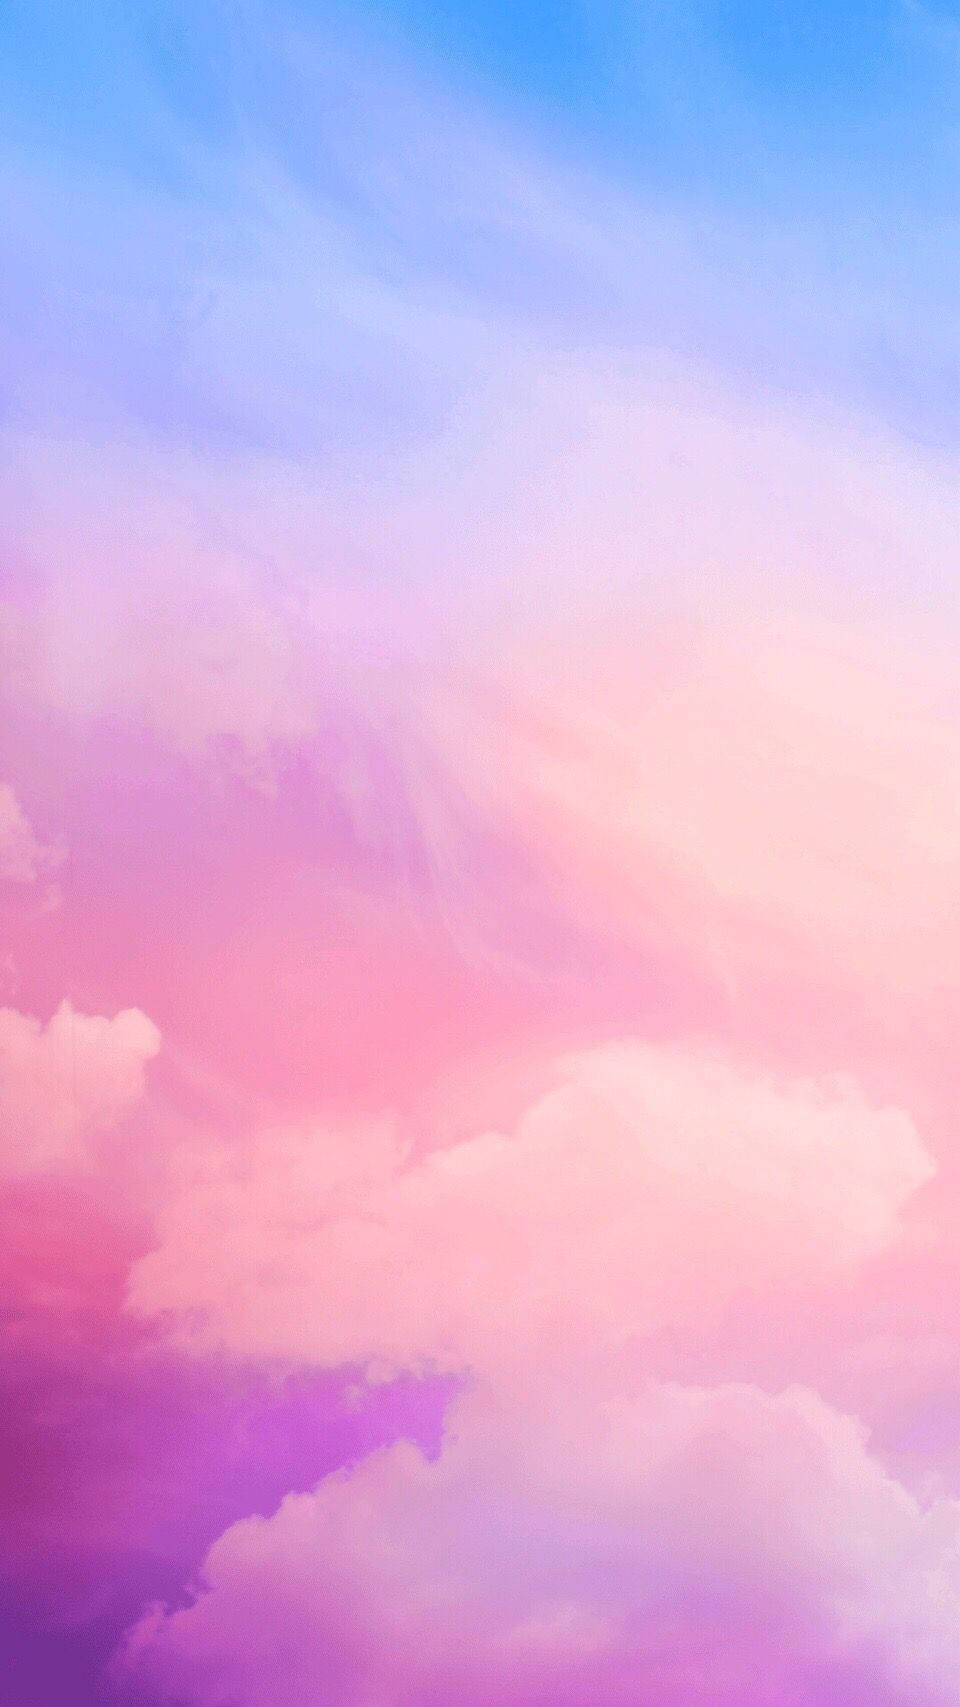 Delightful Pink Cloud Over Serene Sky Wallpaper